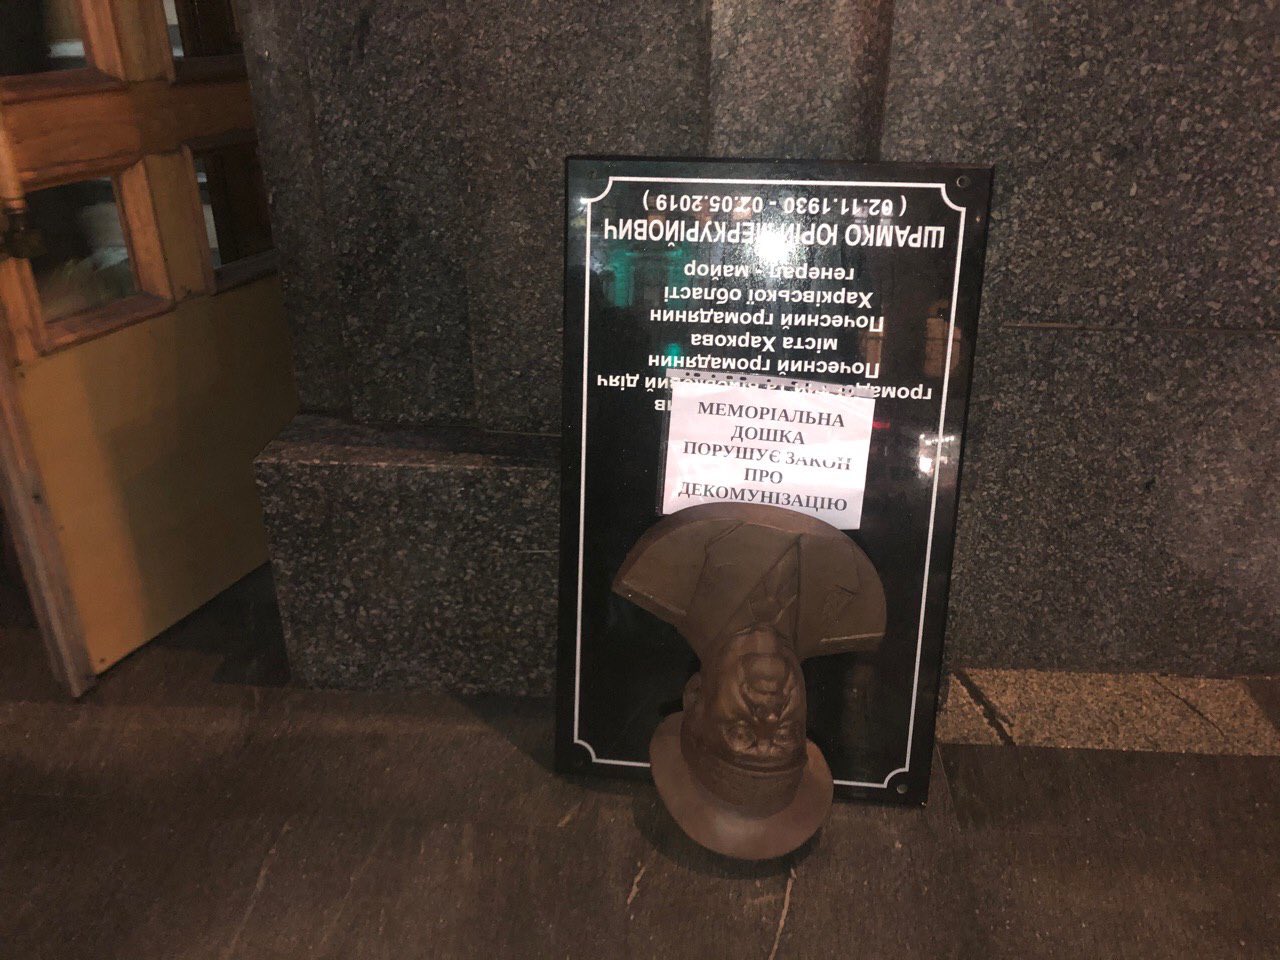 Памятную доску КГБшнику в Харькове демонтировали активисты, пригрозив мэру Кернесу